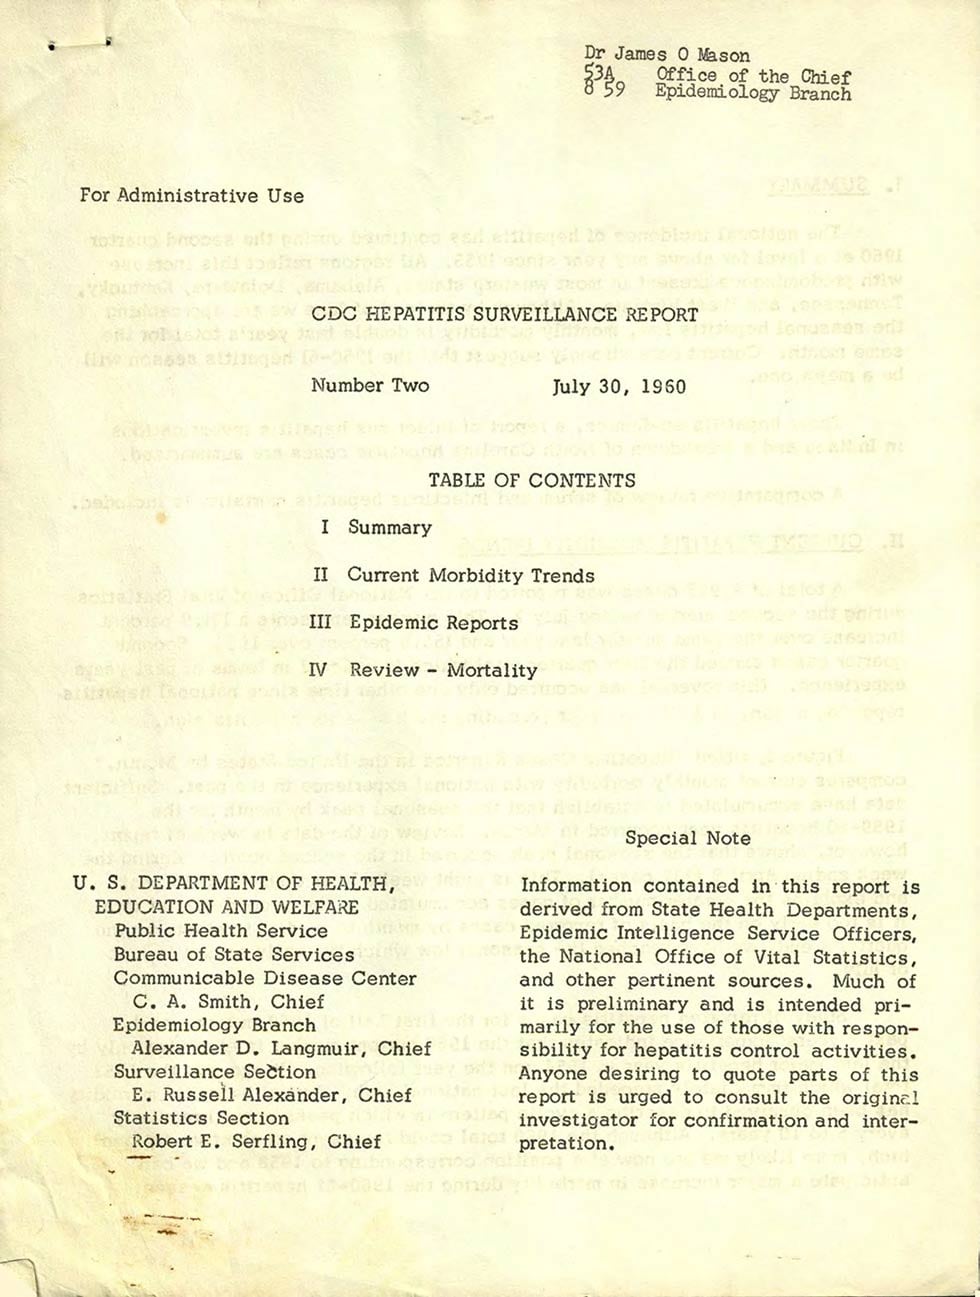 1960 CDC Hepatitis Surveillance Report